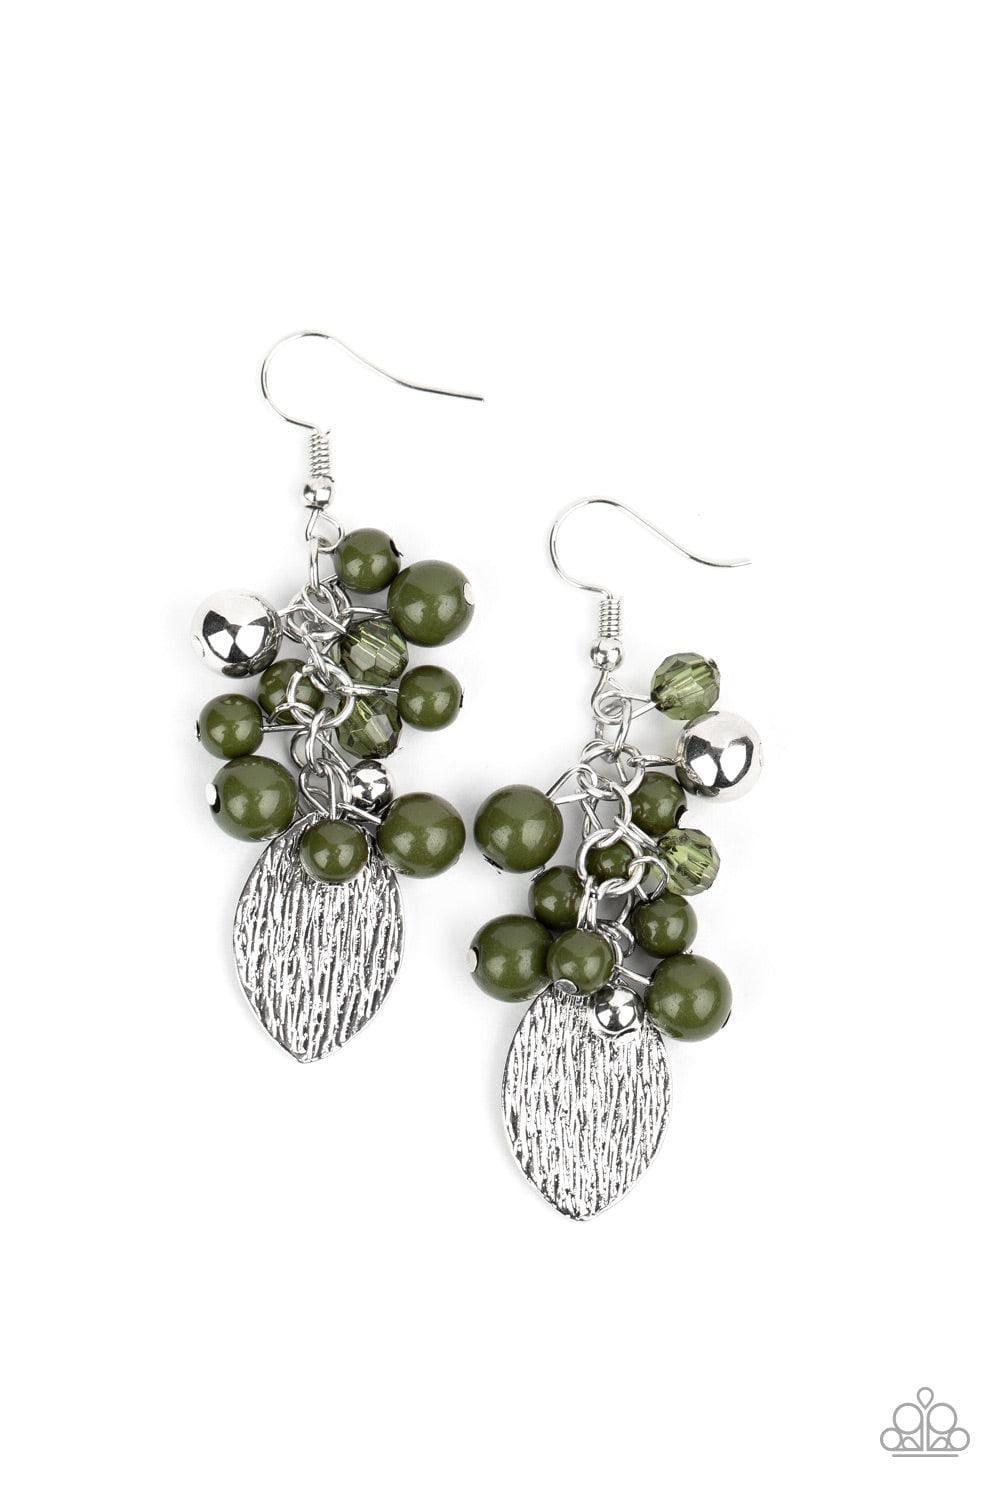 Paparazzi Accessories - Fruity Finesse - Green Earrings - Bling by JessieK